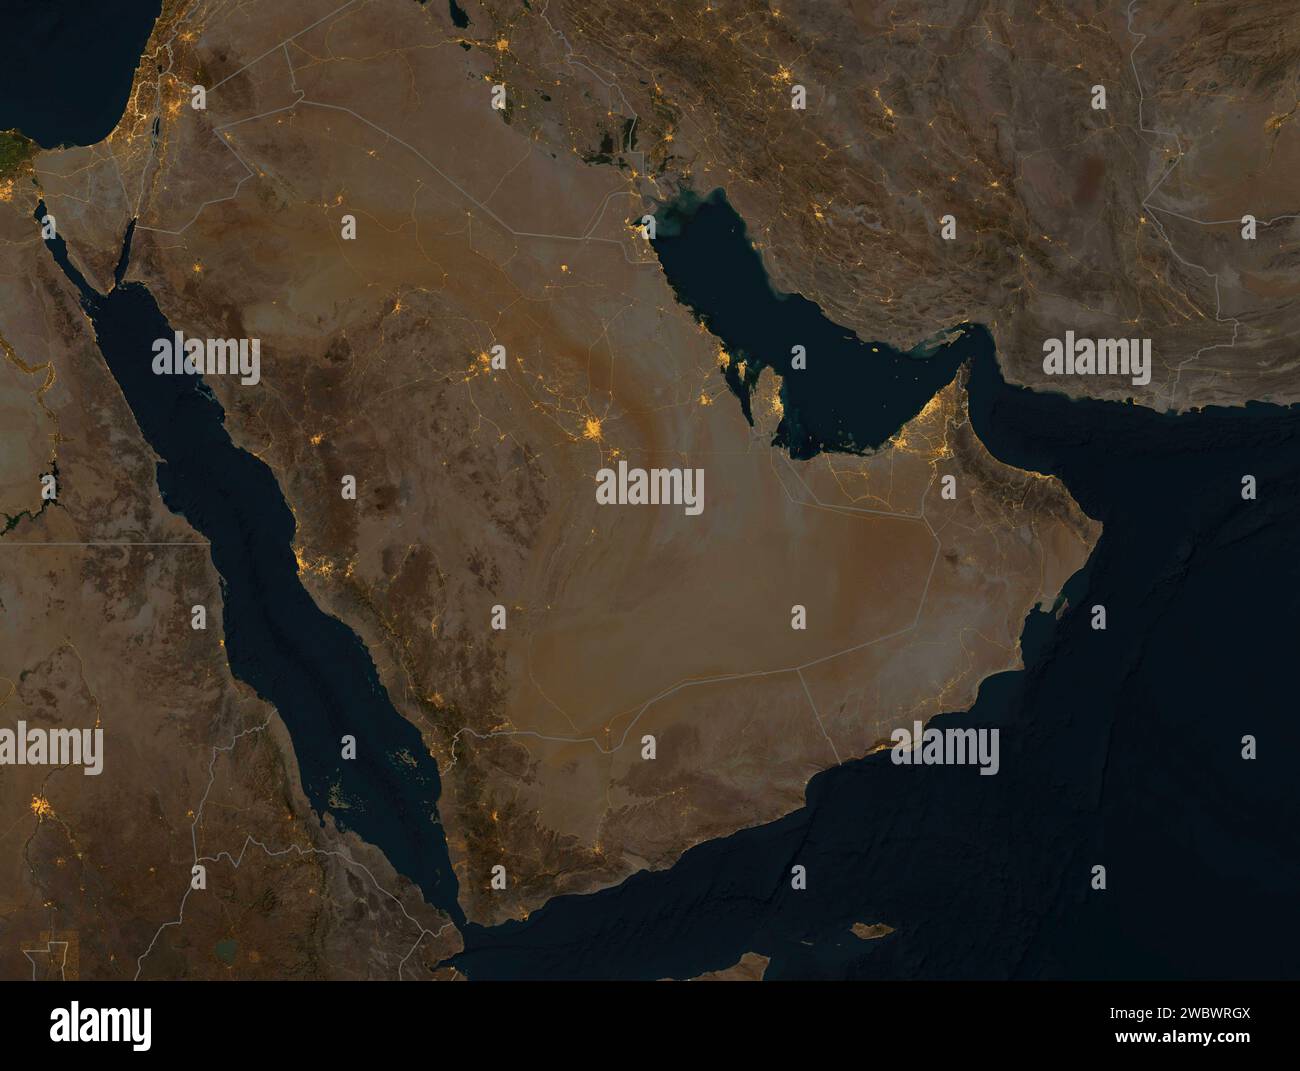 Satellitenblick bei Nacht auf die Arabische Halbinsel. Beleuchtete Städte und Hauptstraßen, nationale Grenzen. Physische Karte mit Reliefs. NASA-Element Stockfoto